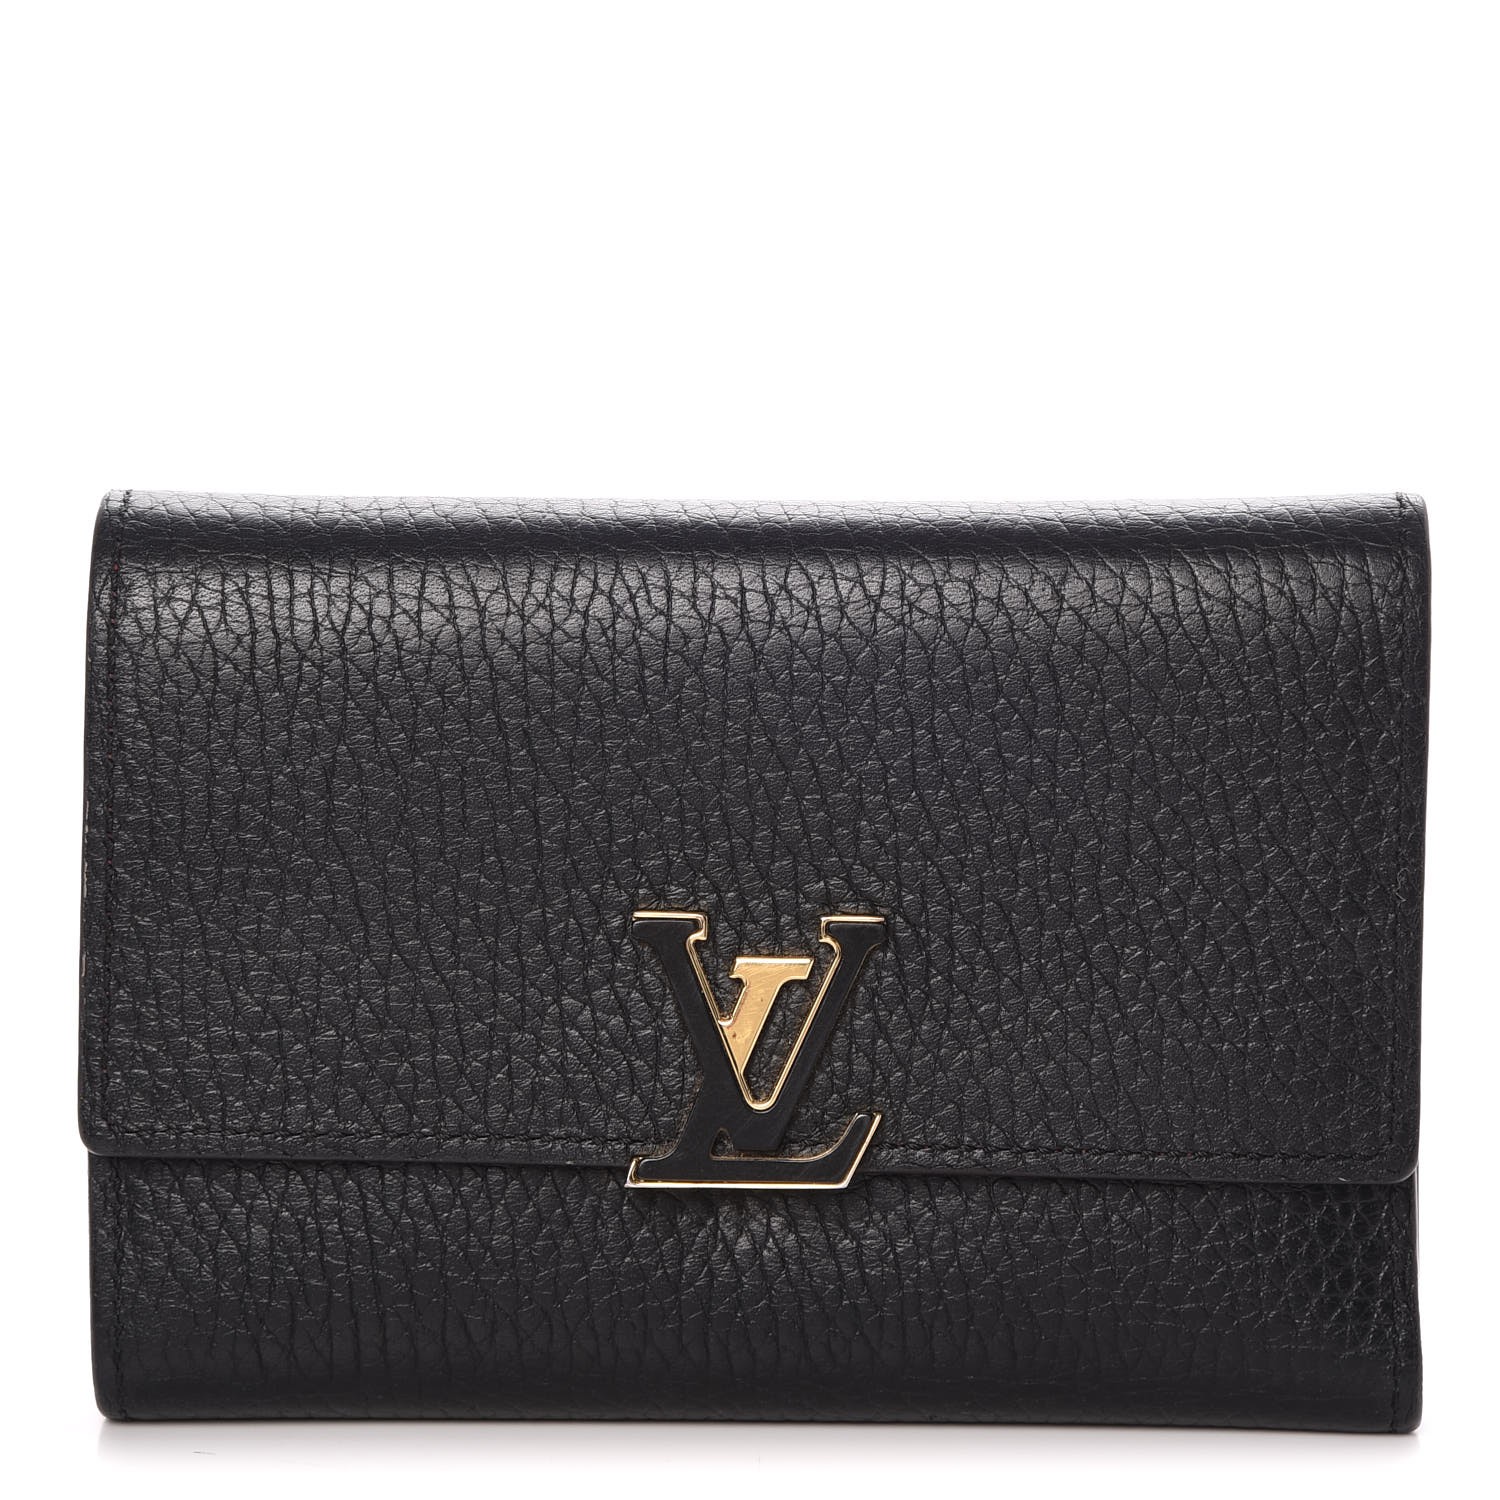 LOUIS VUITTON Taurillon Capucines Compact Wallet Noir Black 275549